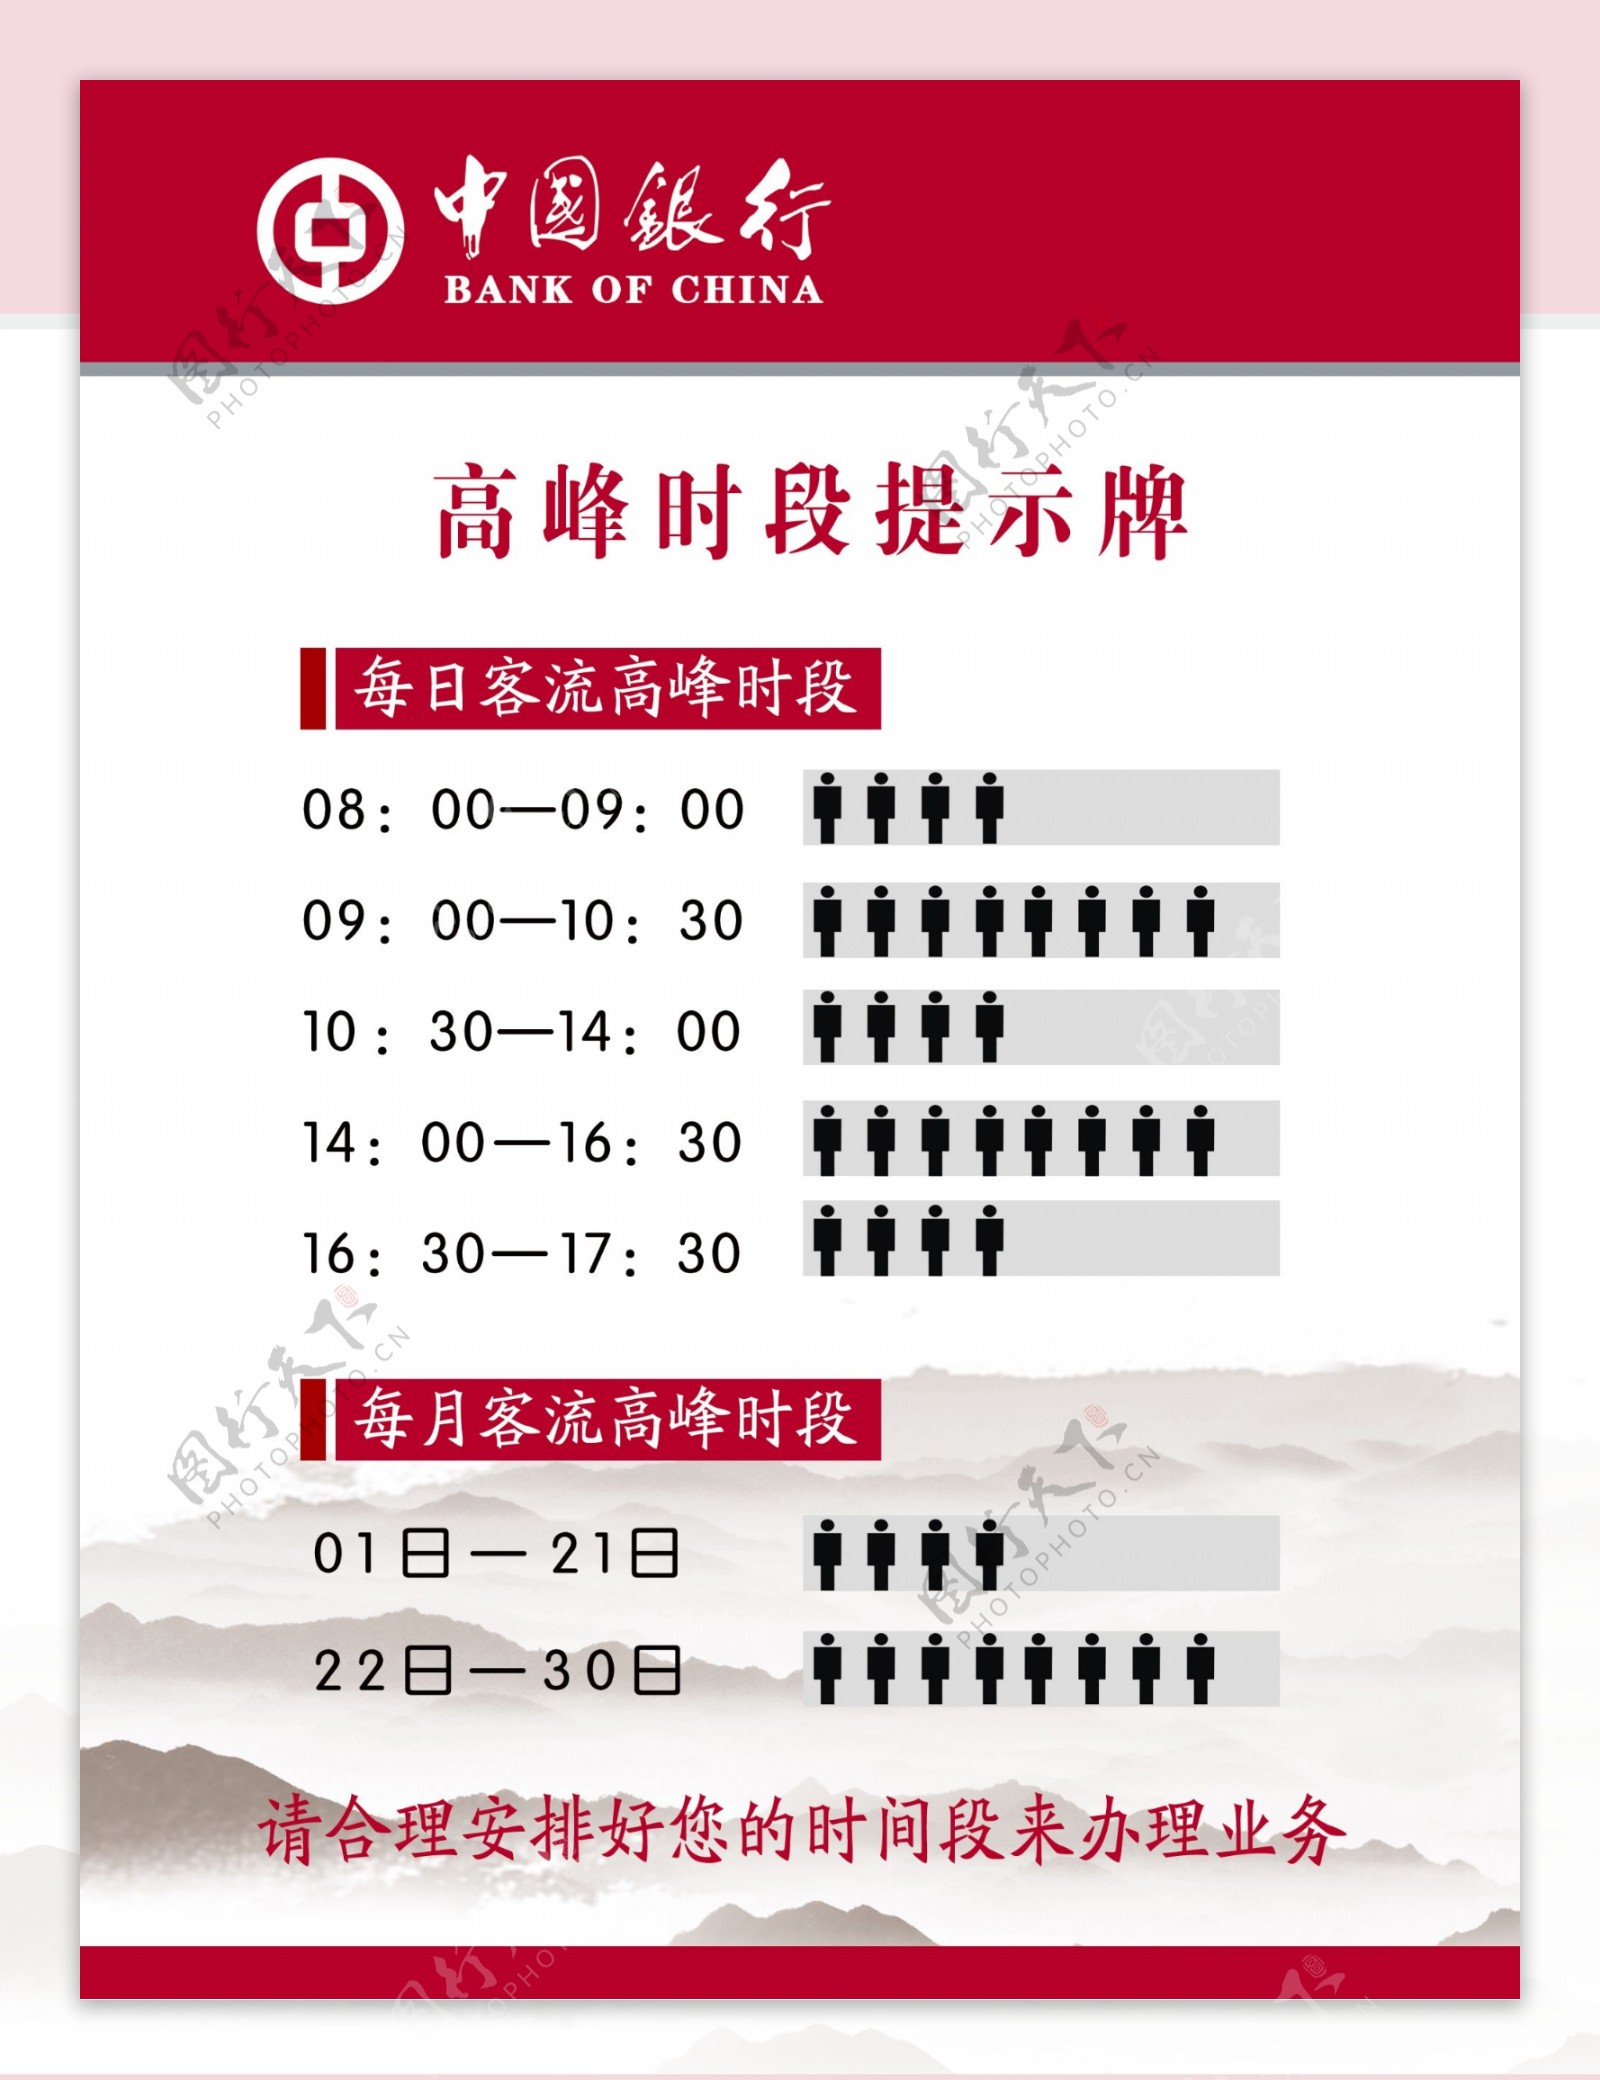 中国银行高峰时段